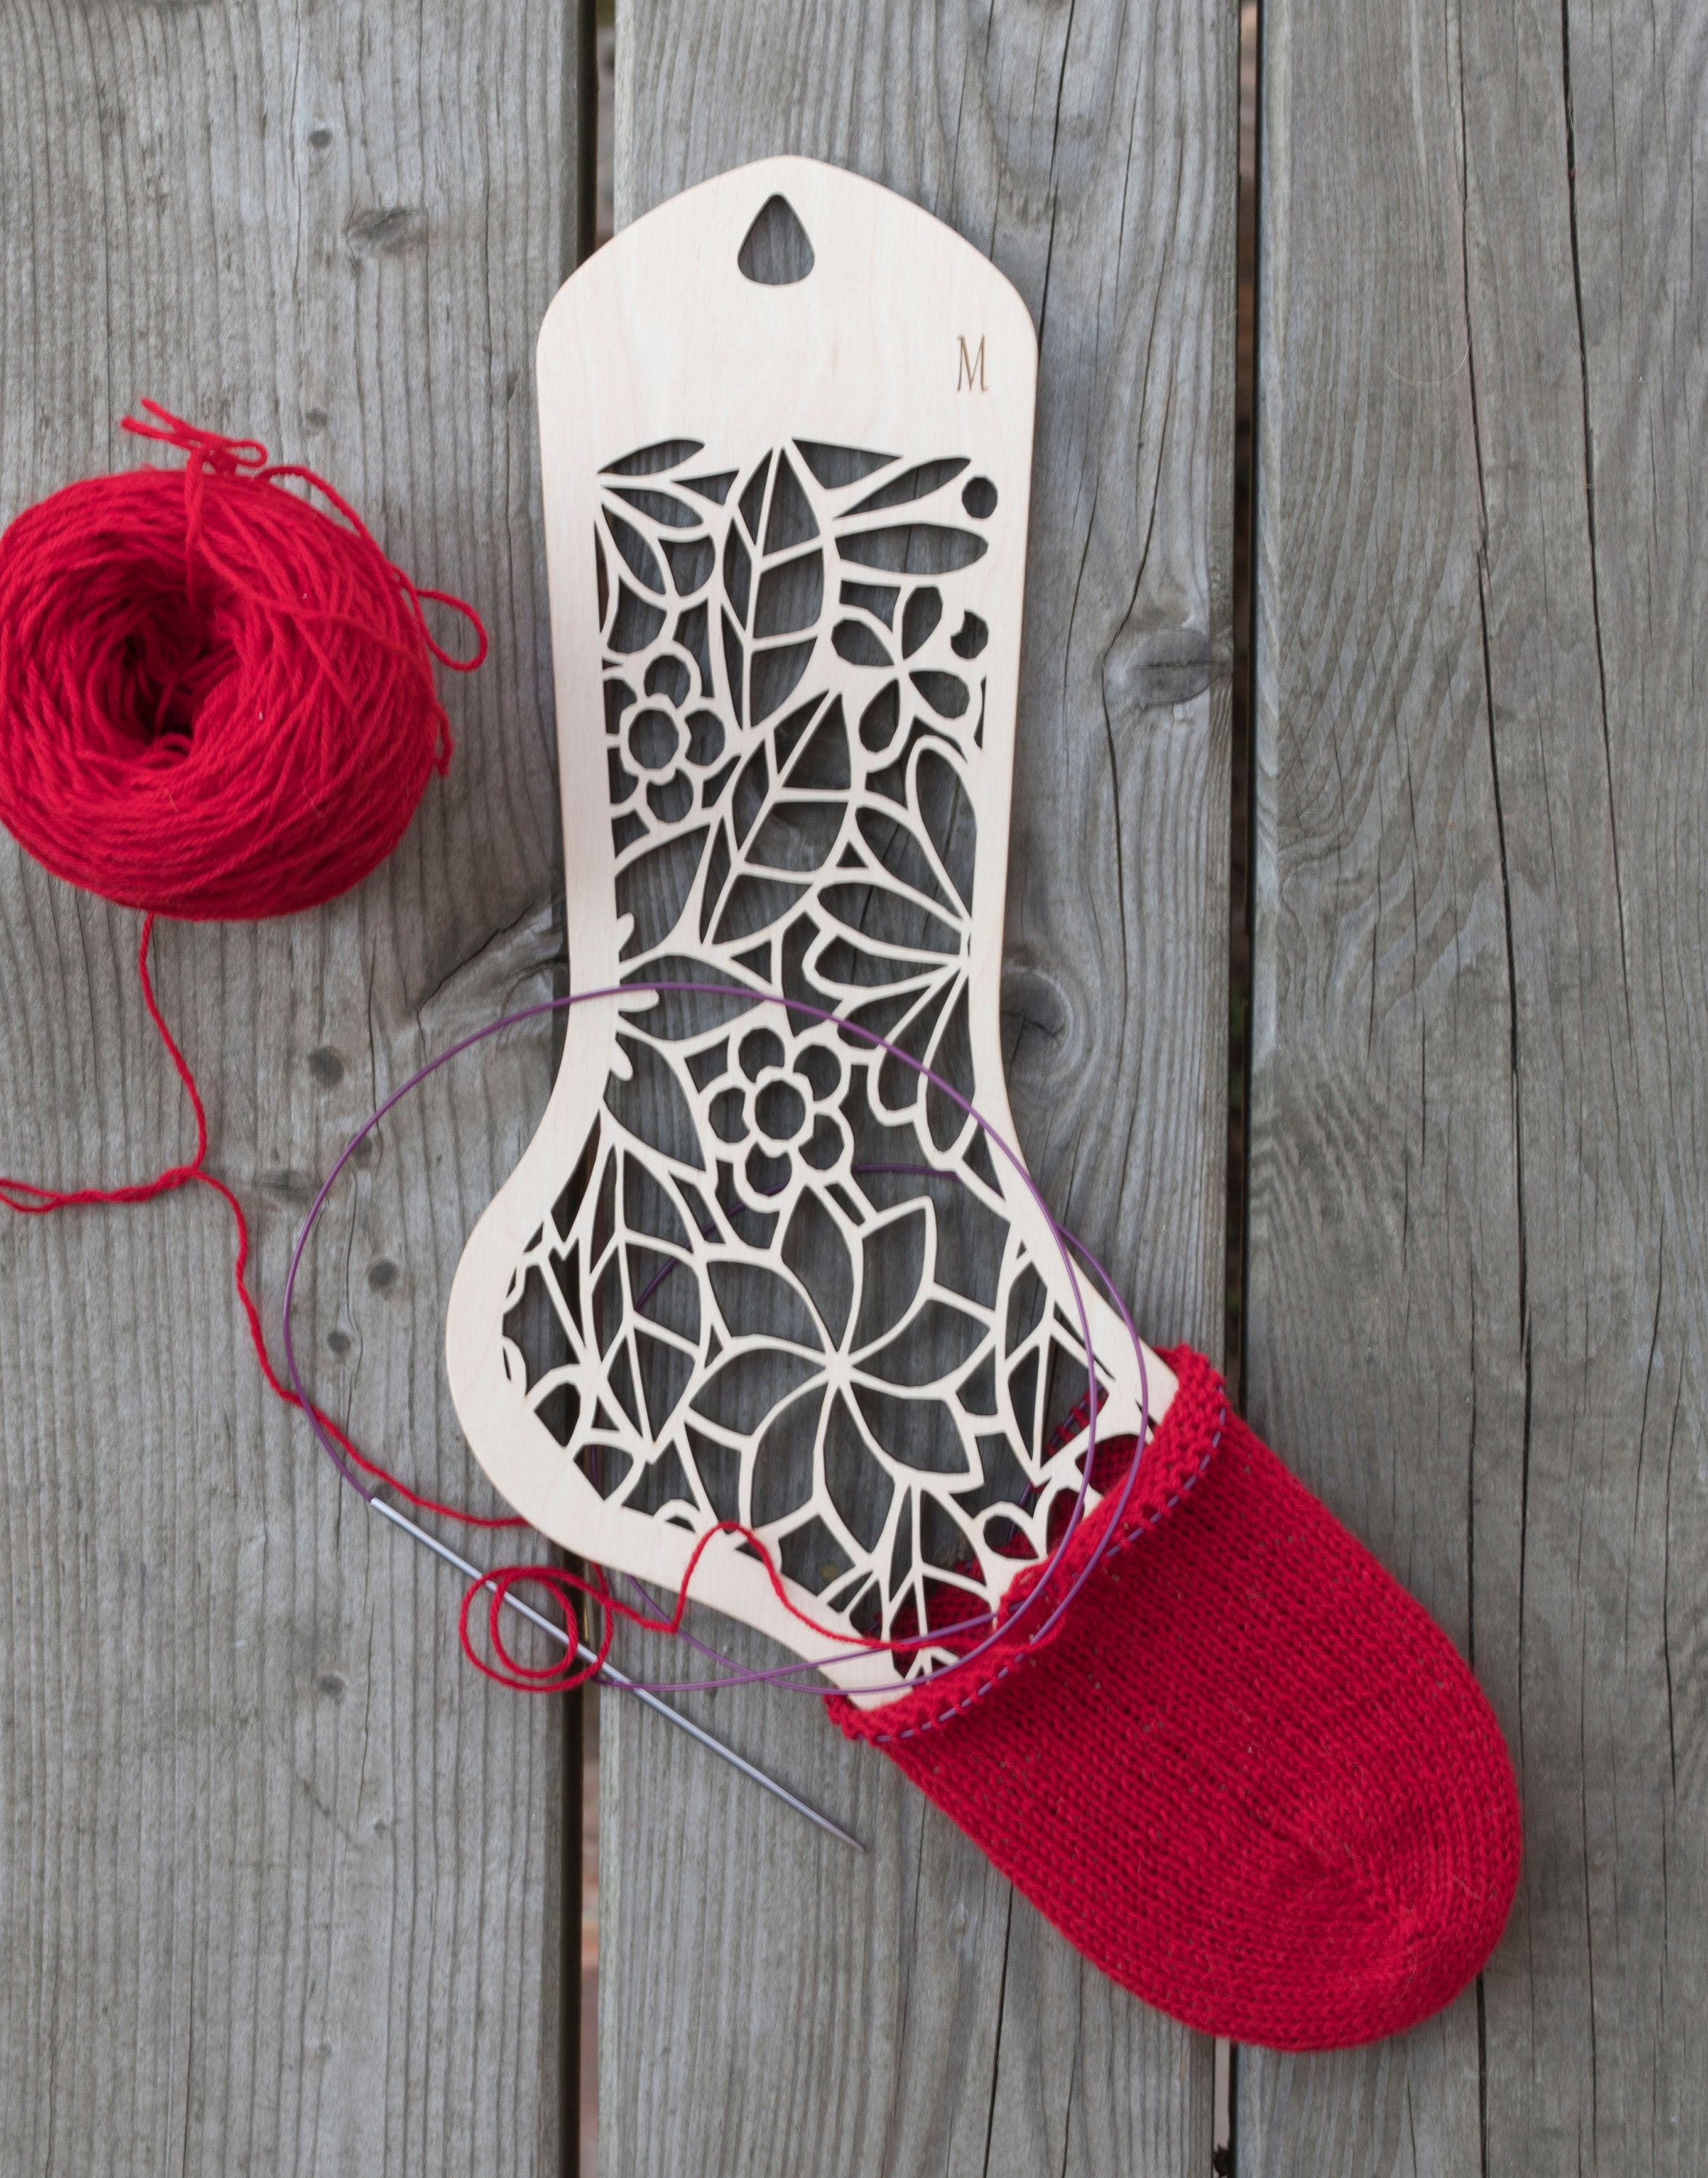 Sock Blockers, Wooden Sock Form, Sock Stretcher, Blocking Hand Knitted Socks,  Knitting Accessory, Gift for Knitter 